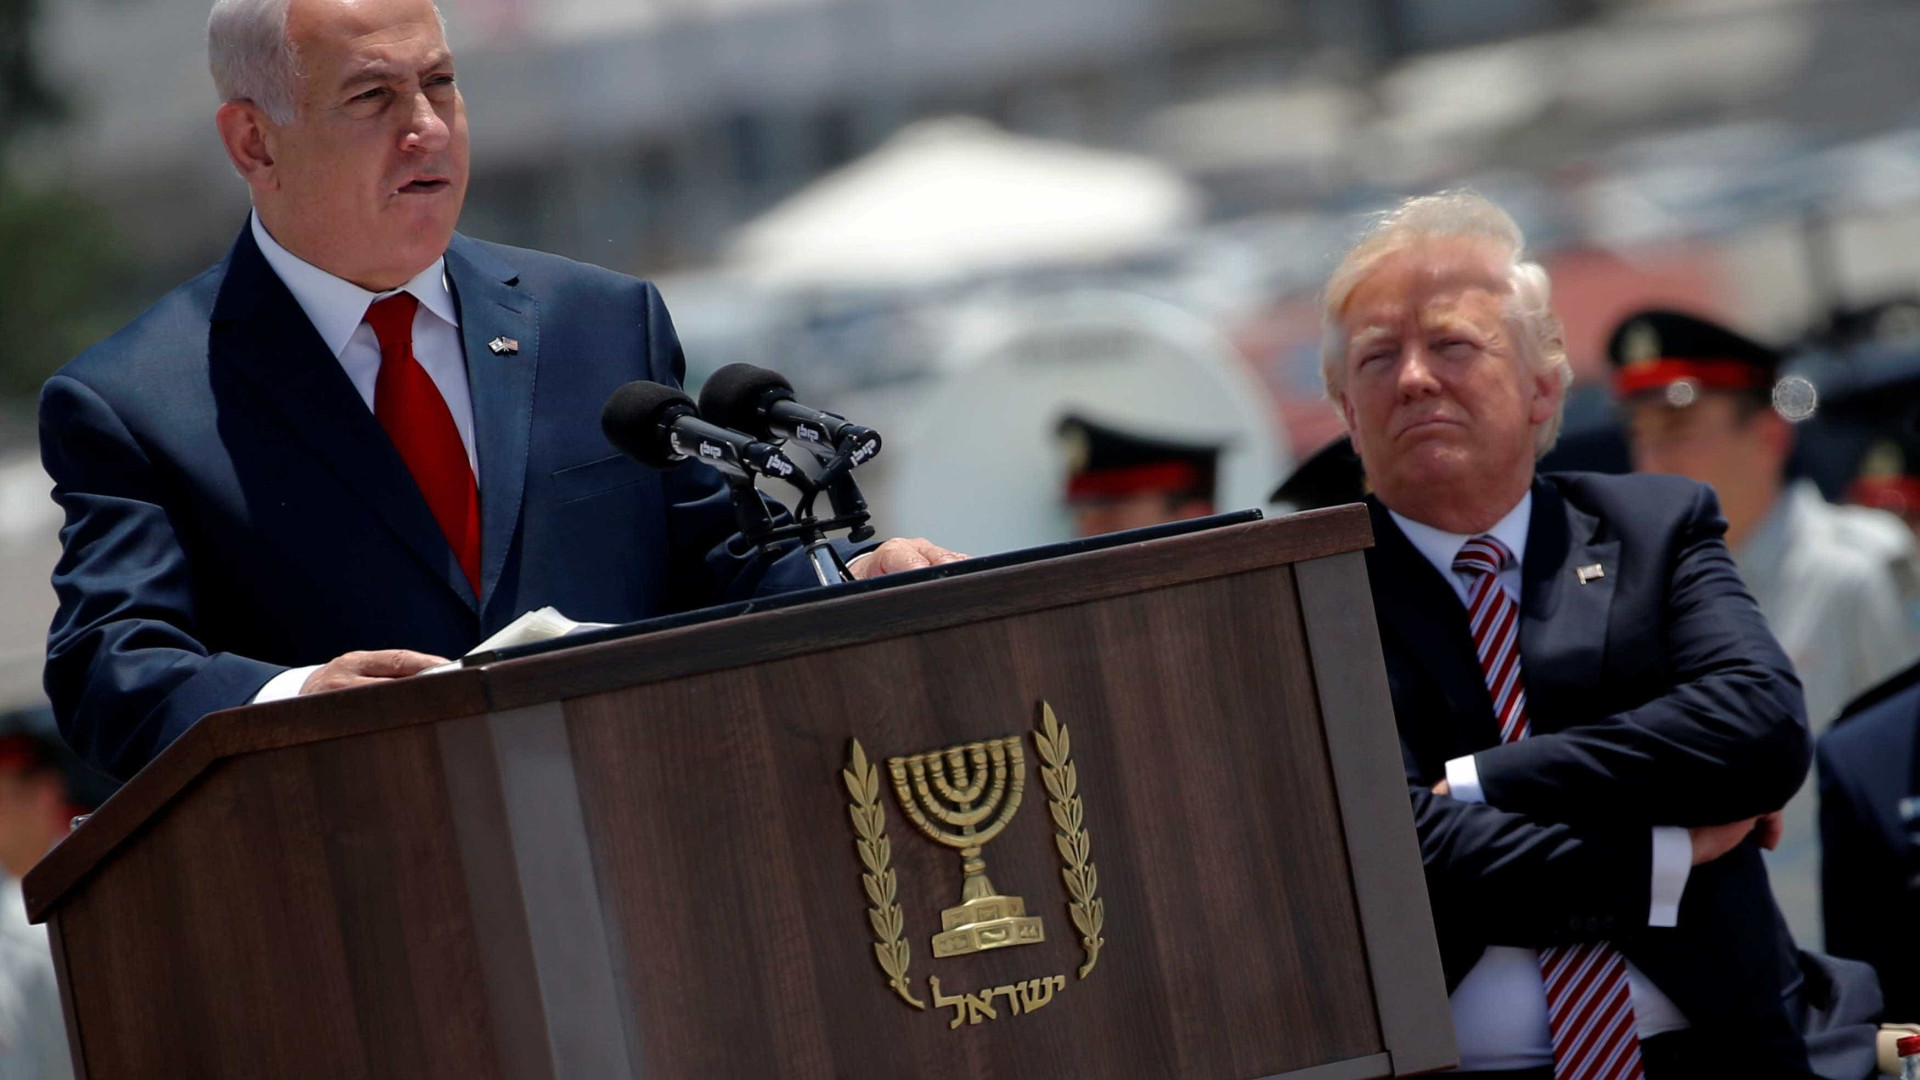 Paz com palestinos é a "mais difícil",
 mas vamos alcançá-la, diz Trump